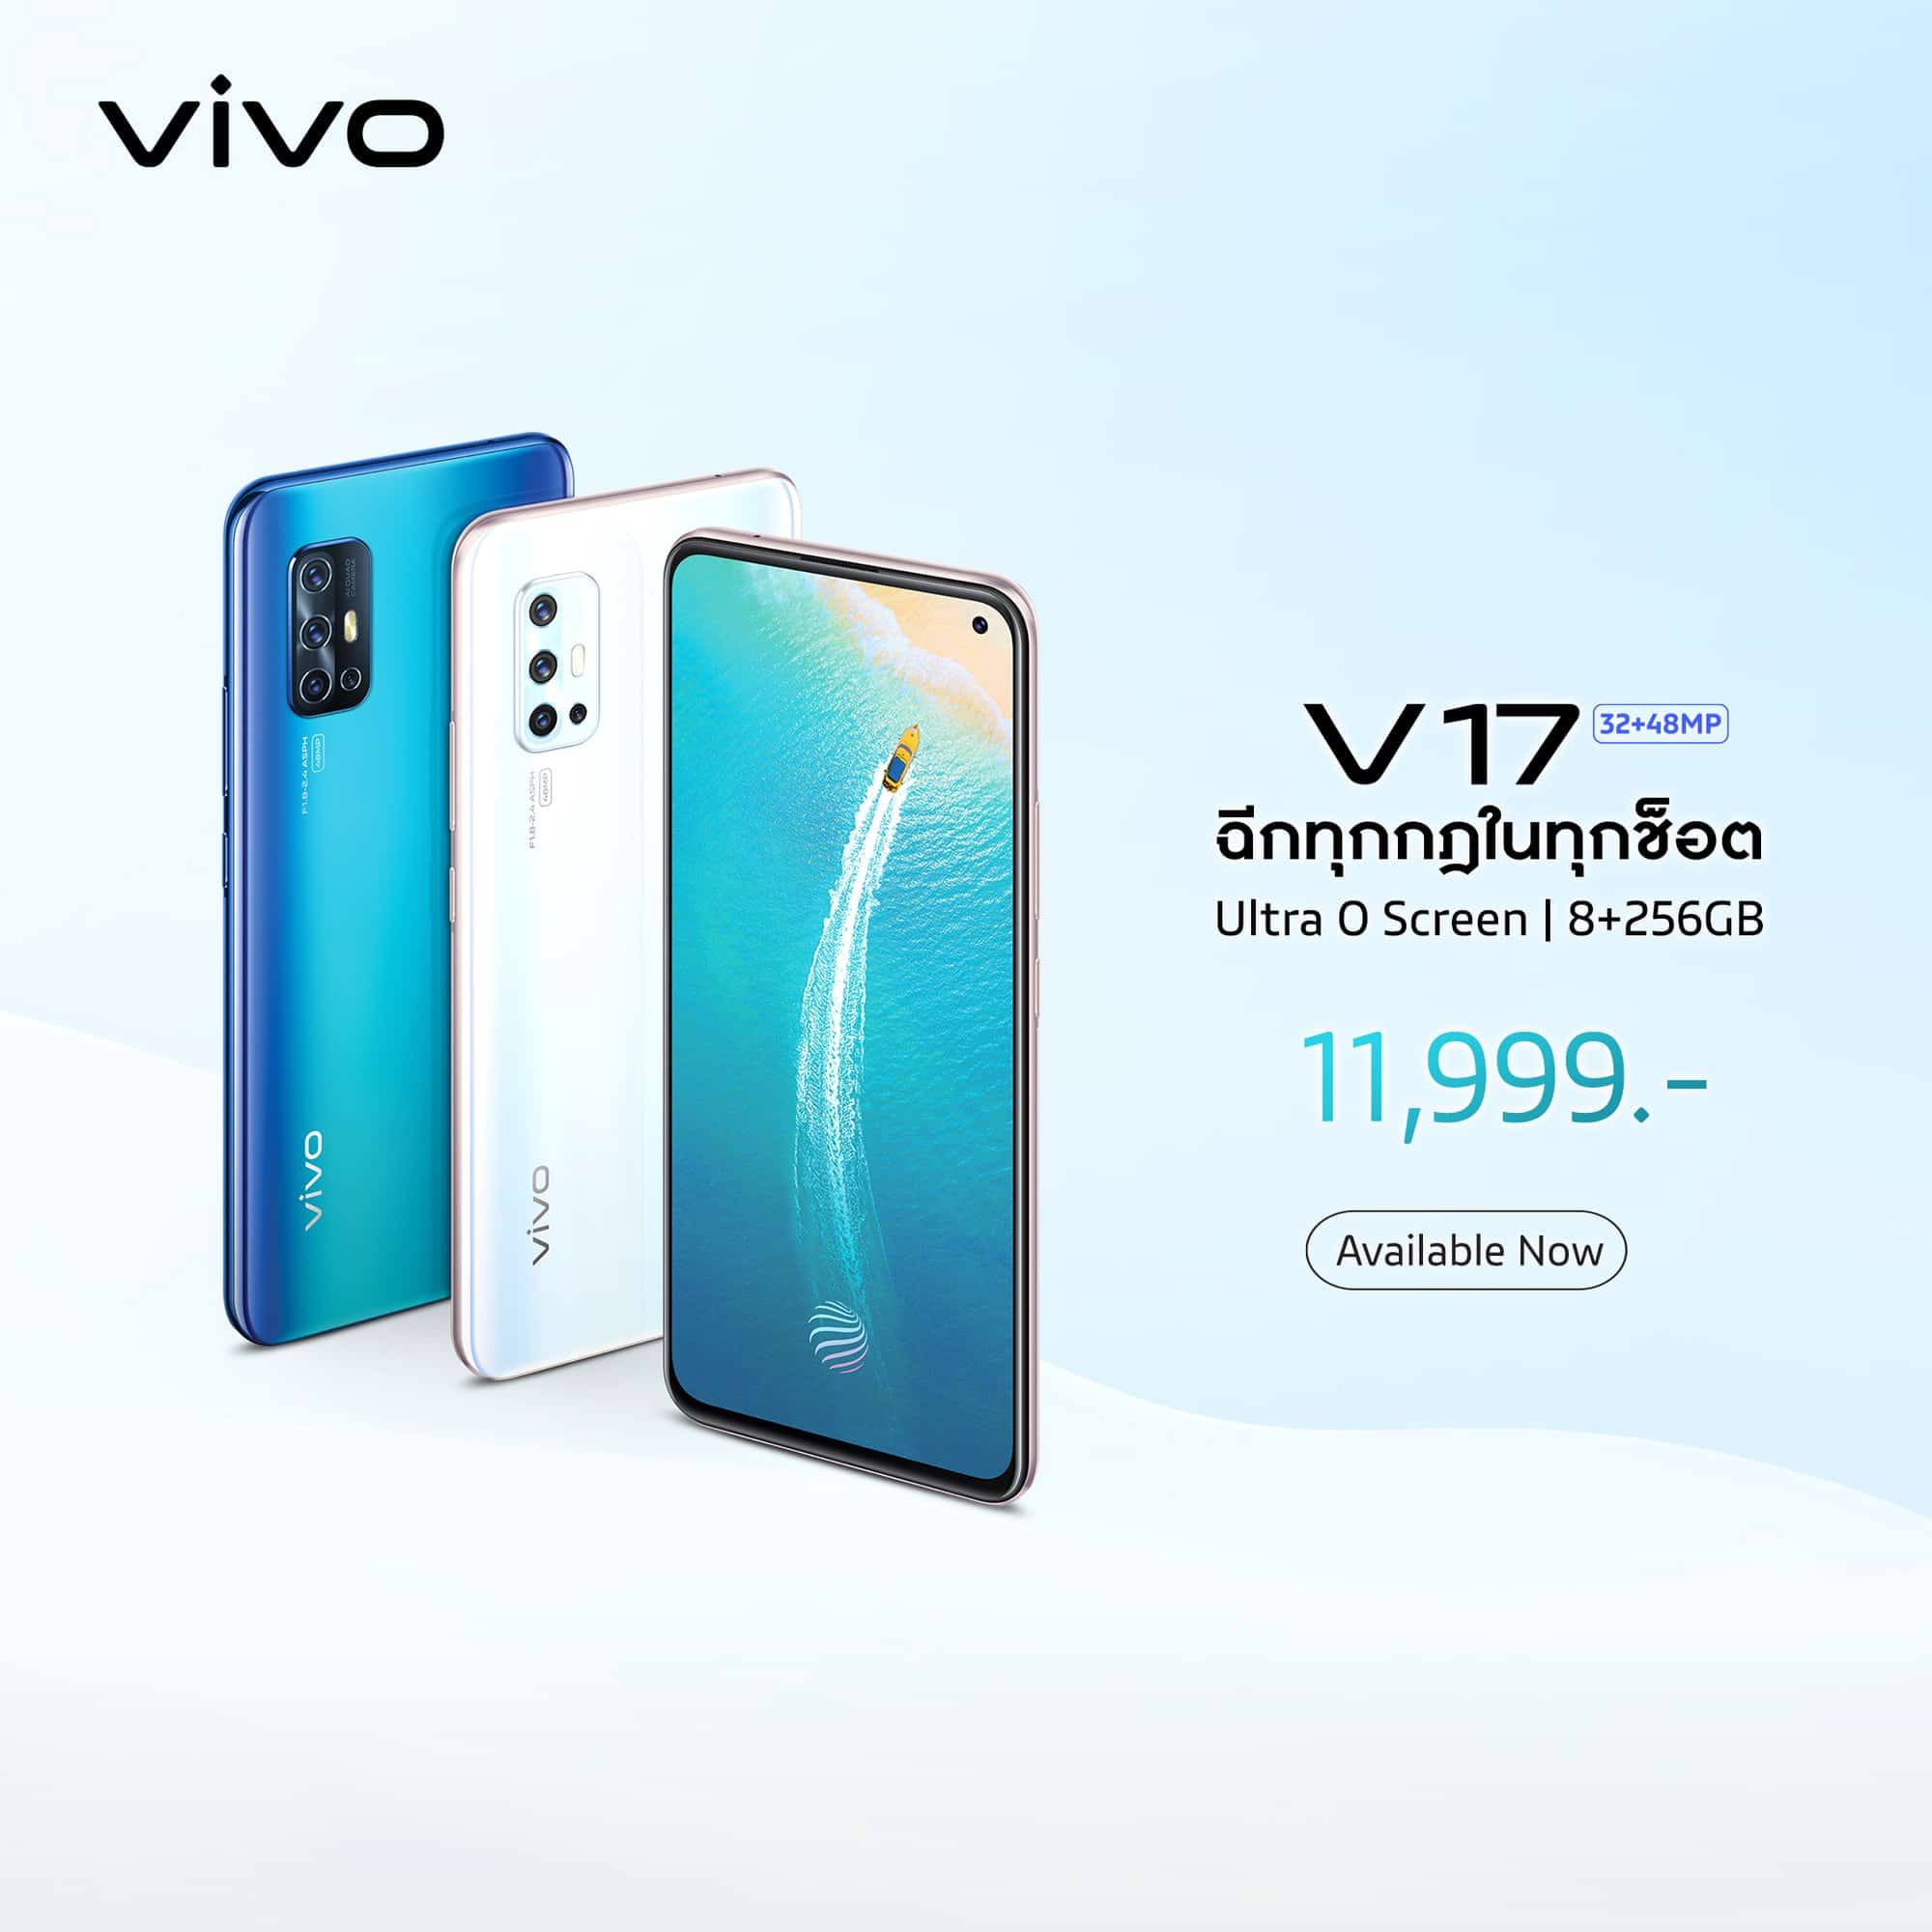 Vivo V17 สมาร์ทโฟนสุดล้ำฉีกทุกข้อจำกัด ด้วยหน้าจอ Ultra O Screen พร้อมกล้อง 5 ตัว 1